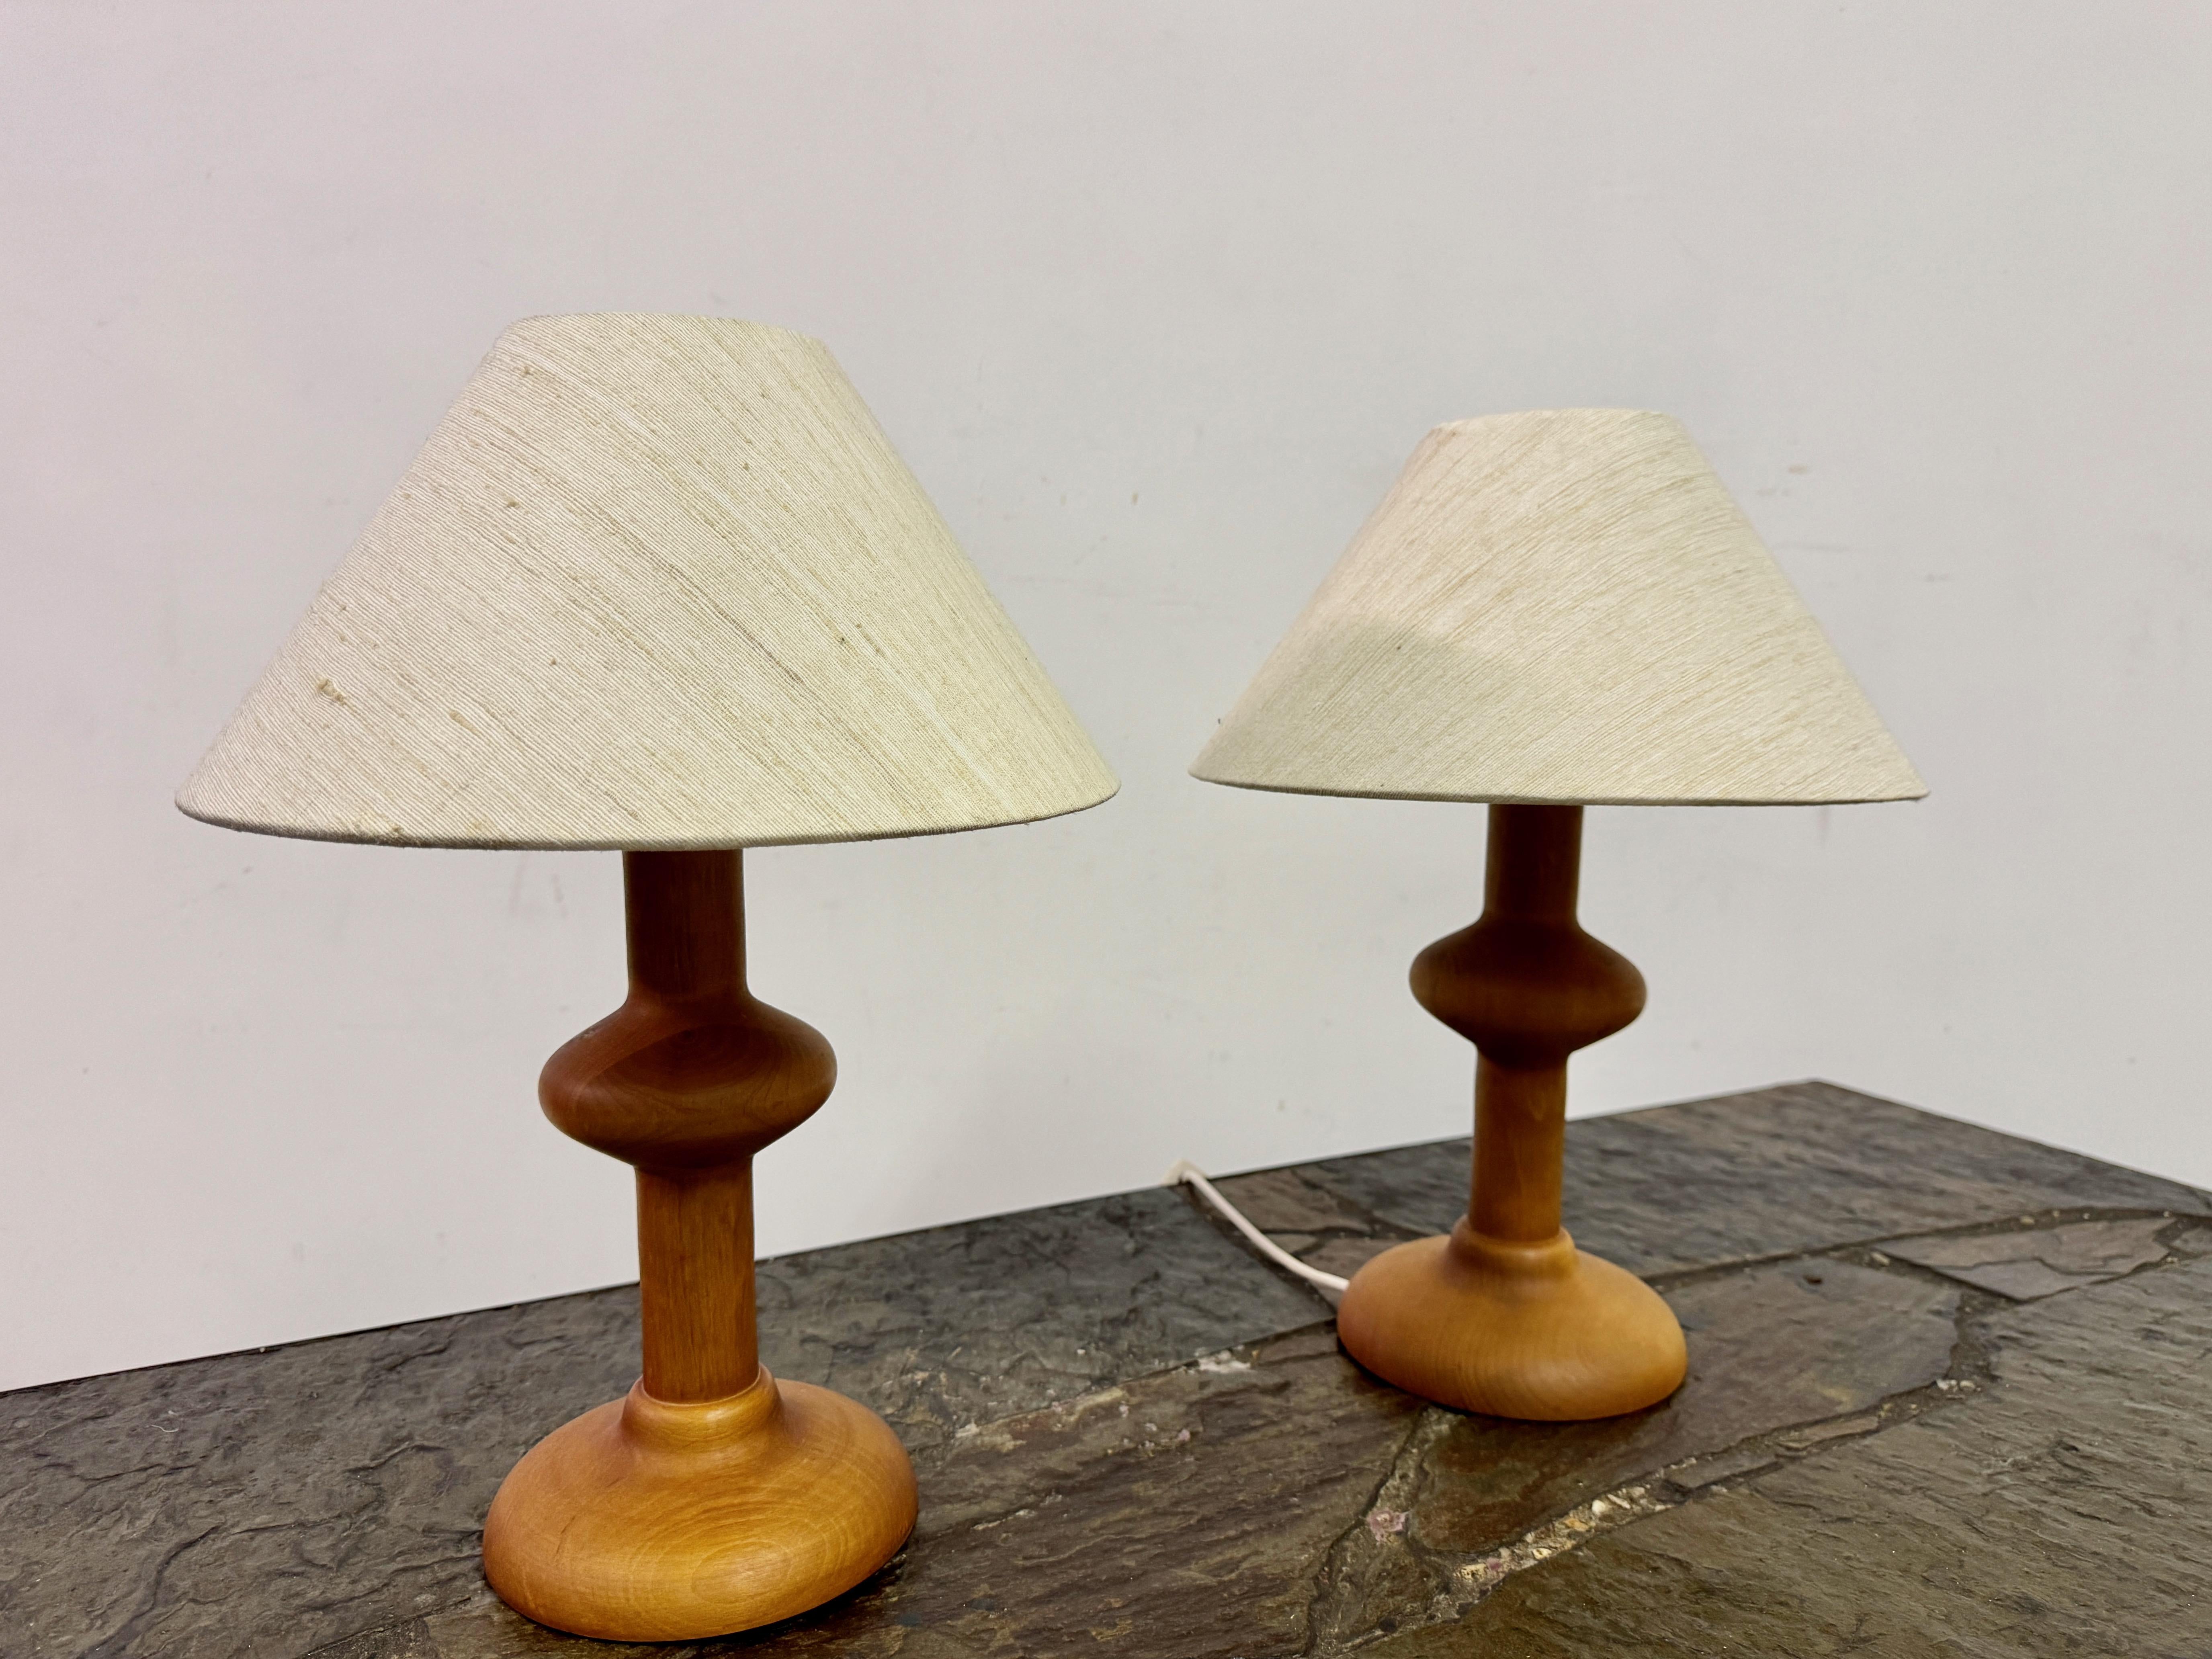 Paar Tischlampen

Gedrechseltes Holz

Original-Farbtöne

Organische Form

1970s

Kleine Falte in einem der Farbtöne